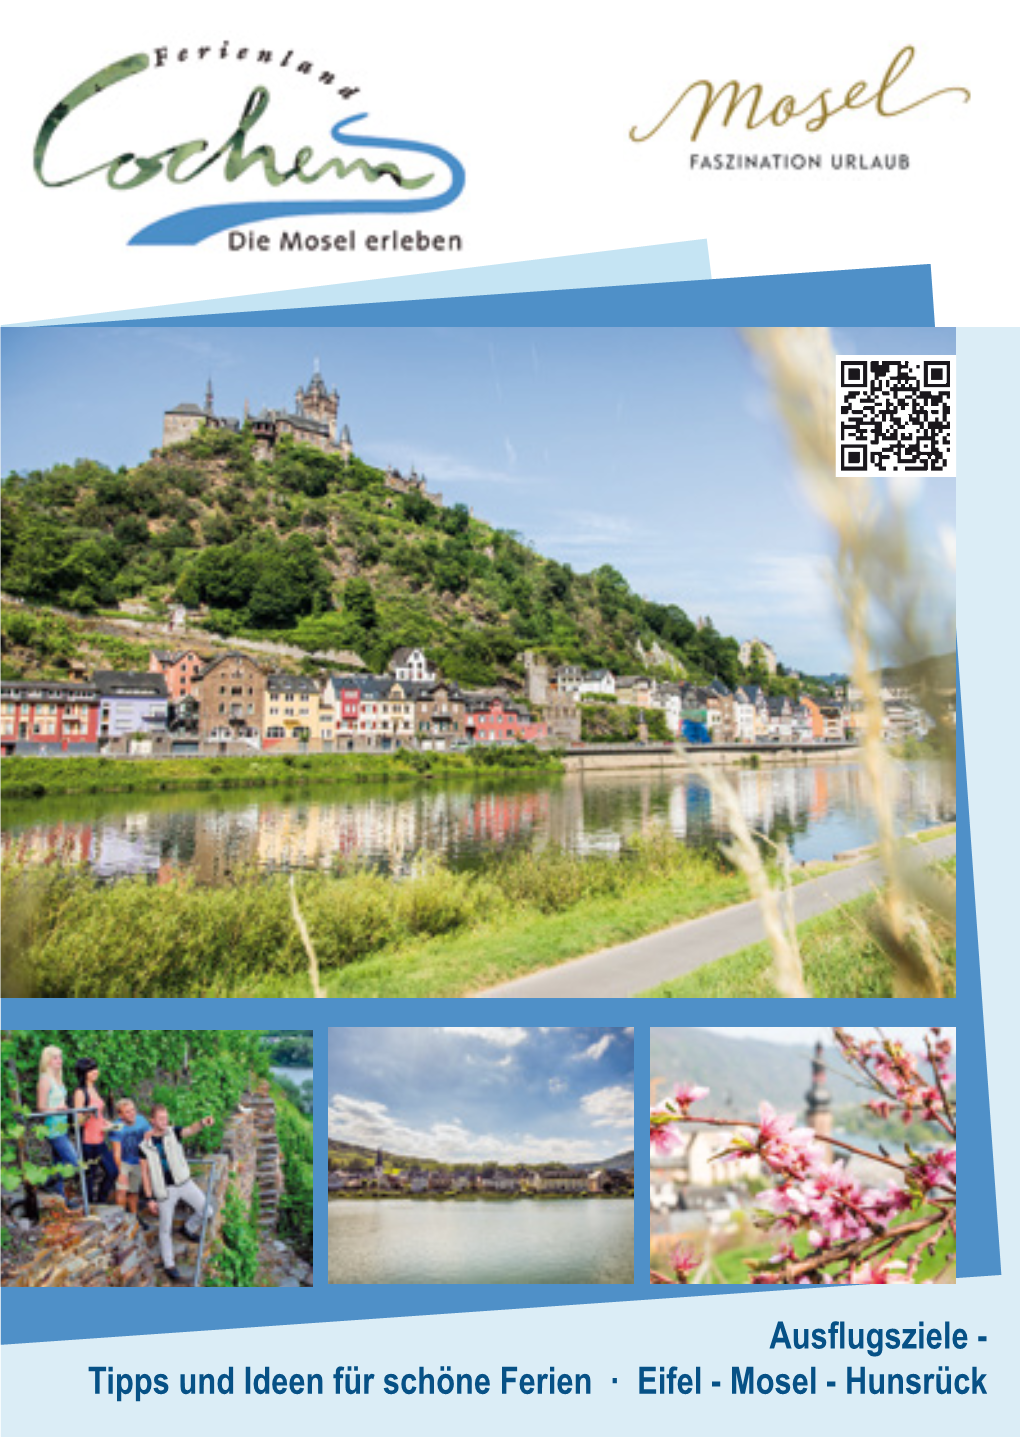 Tipps Und Ideen Für Schöne Ferien · Eifel - Mosel - Hunsrück 2 Panoramakarte Ferienland Cochem Panoramakarte Ferienland Cochem 3 4 Inhaltsverzeichnis